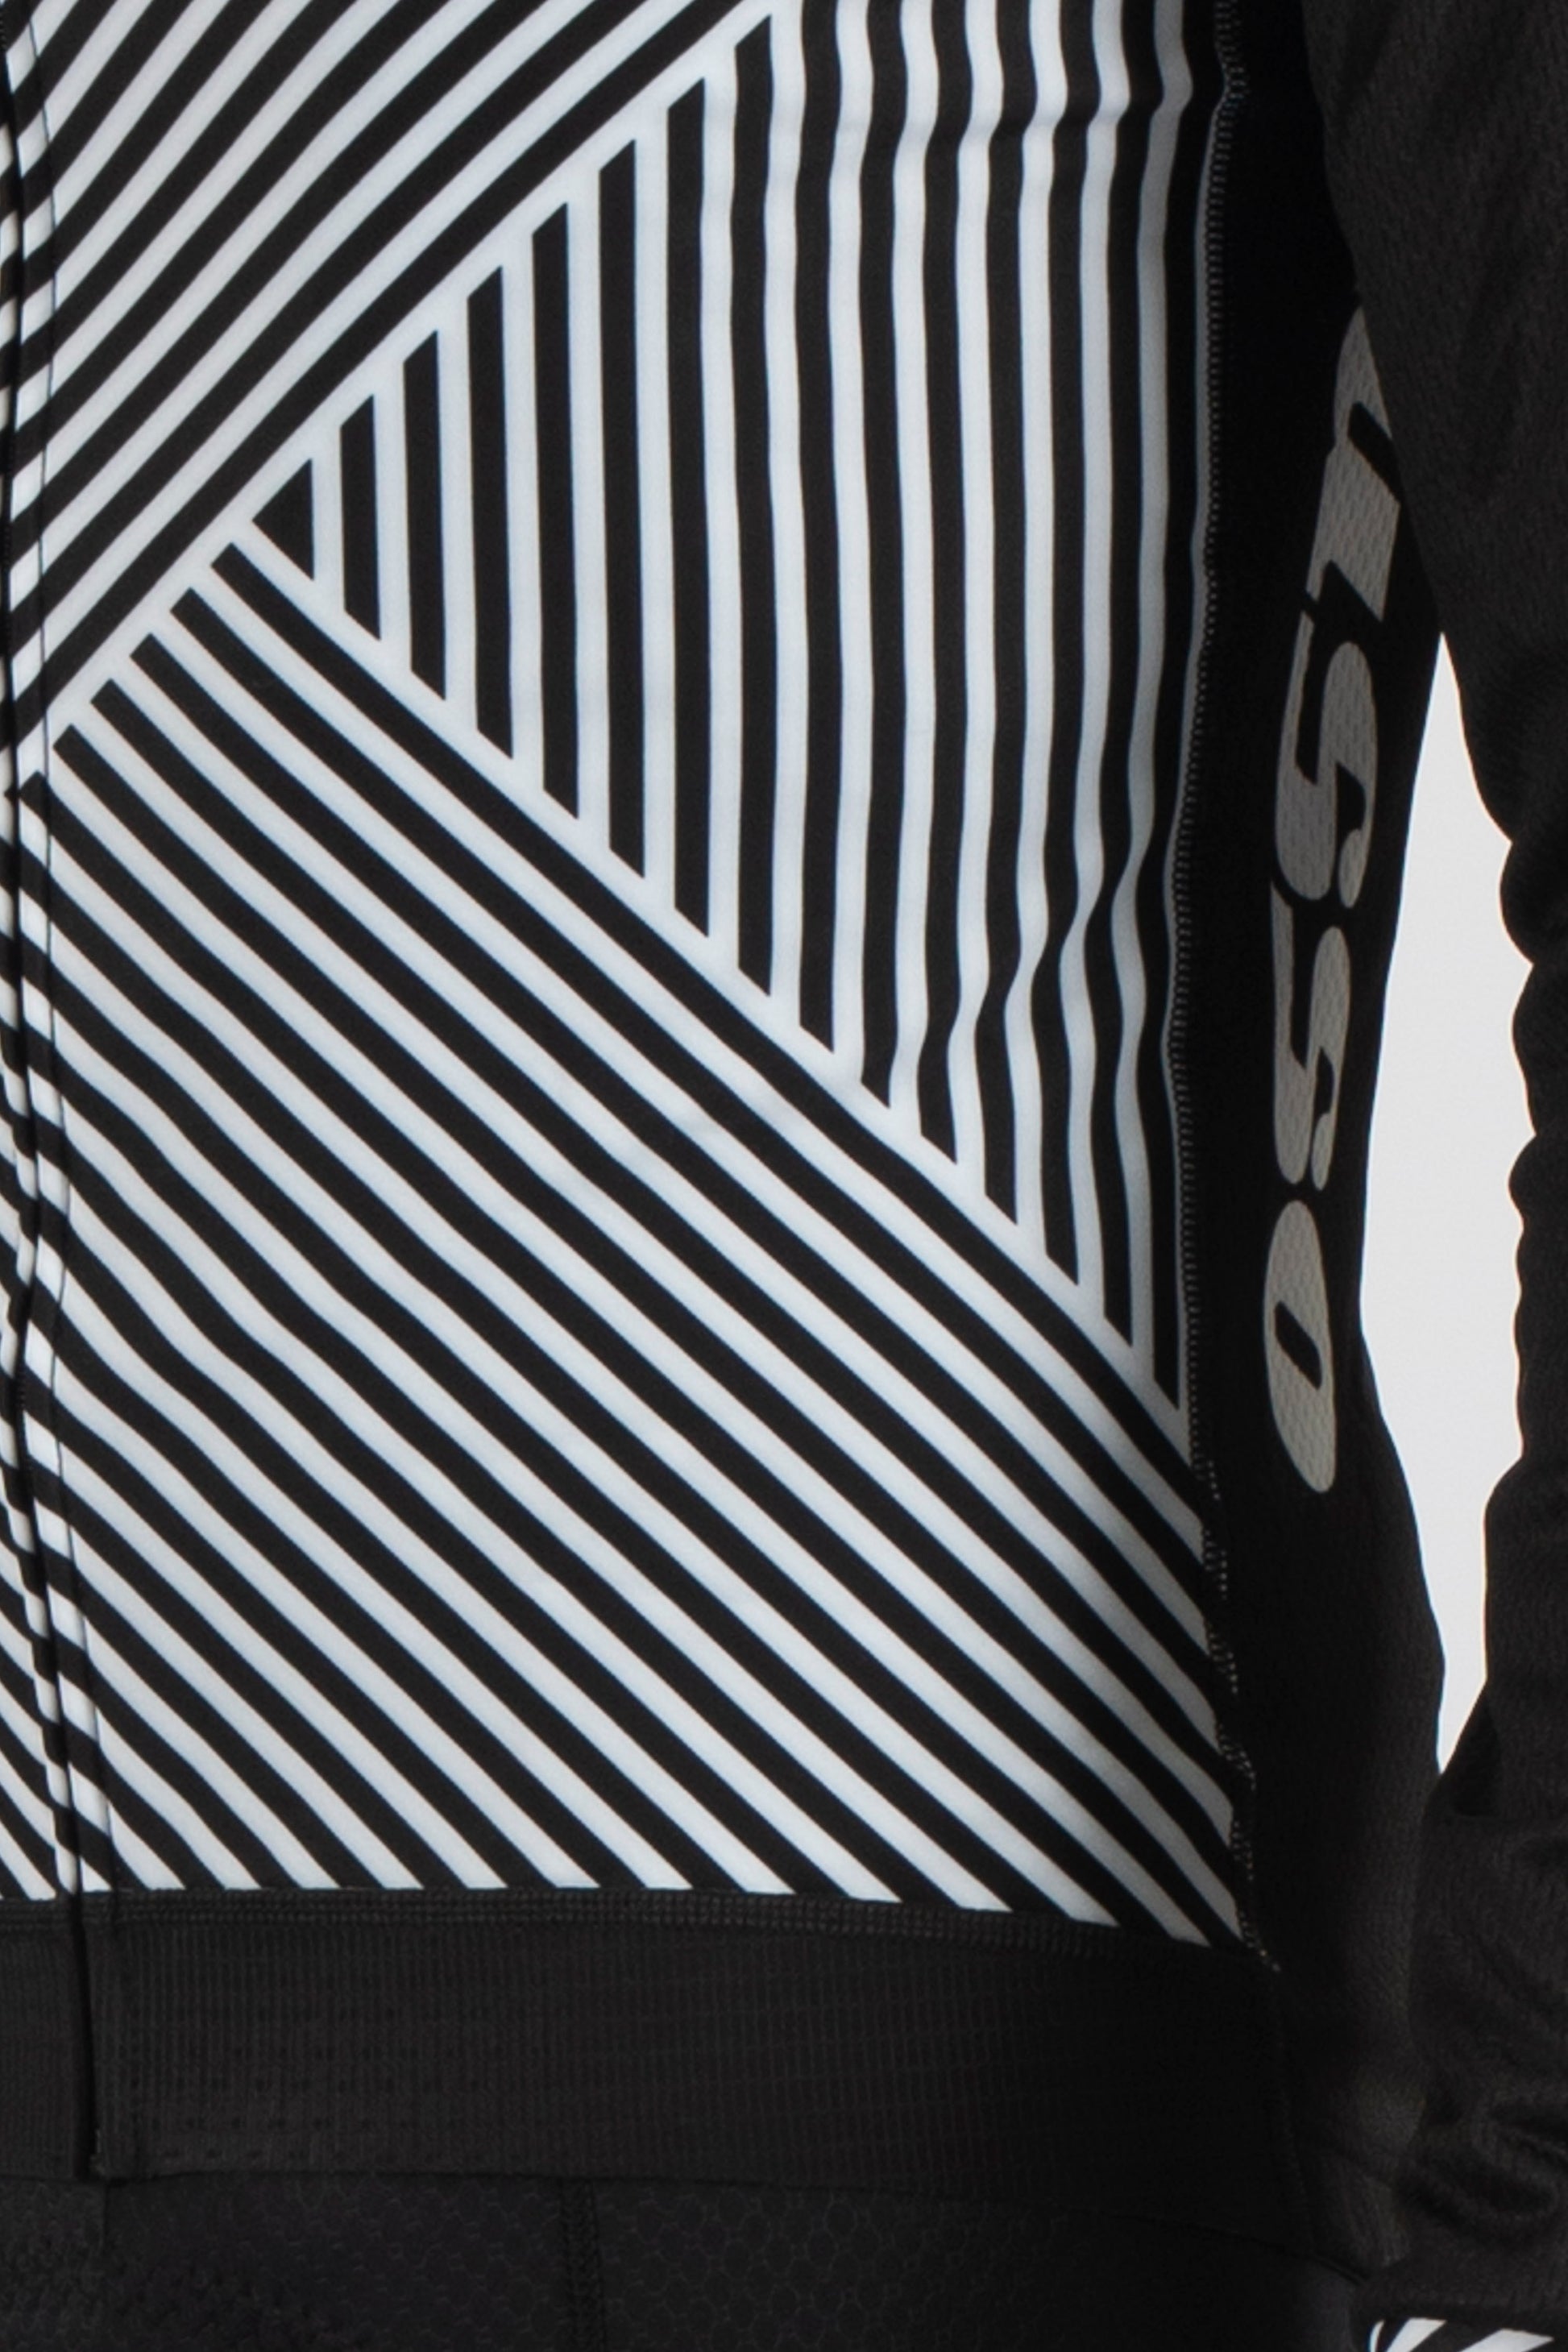 Stripes Long Sleeve Jersey - Lusso Cycle Wear